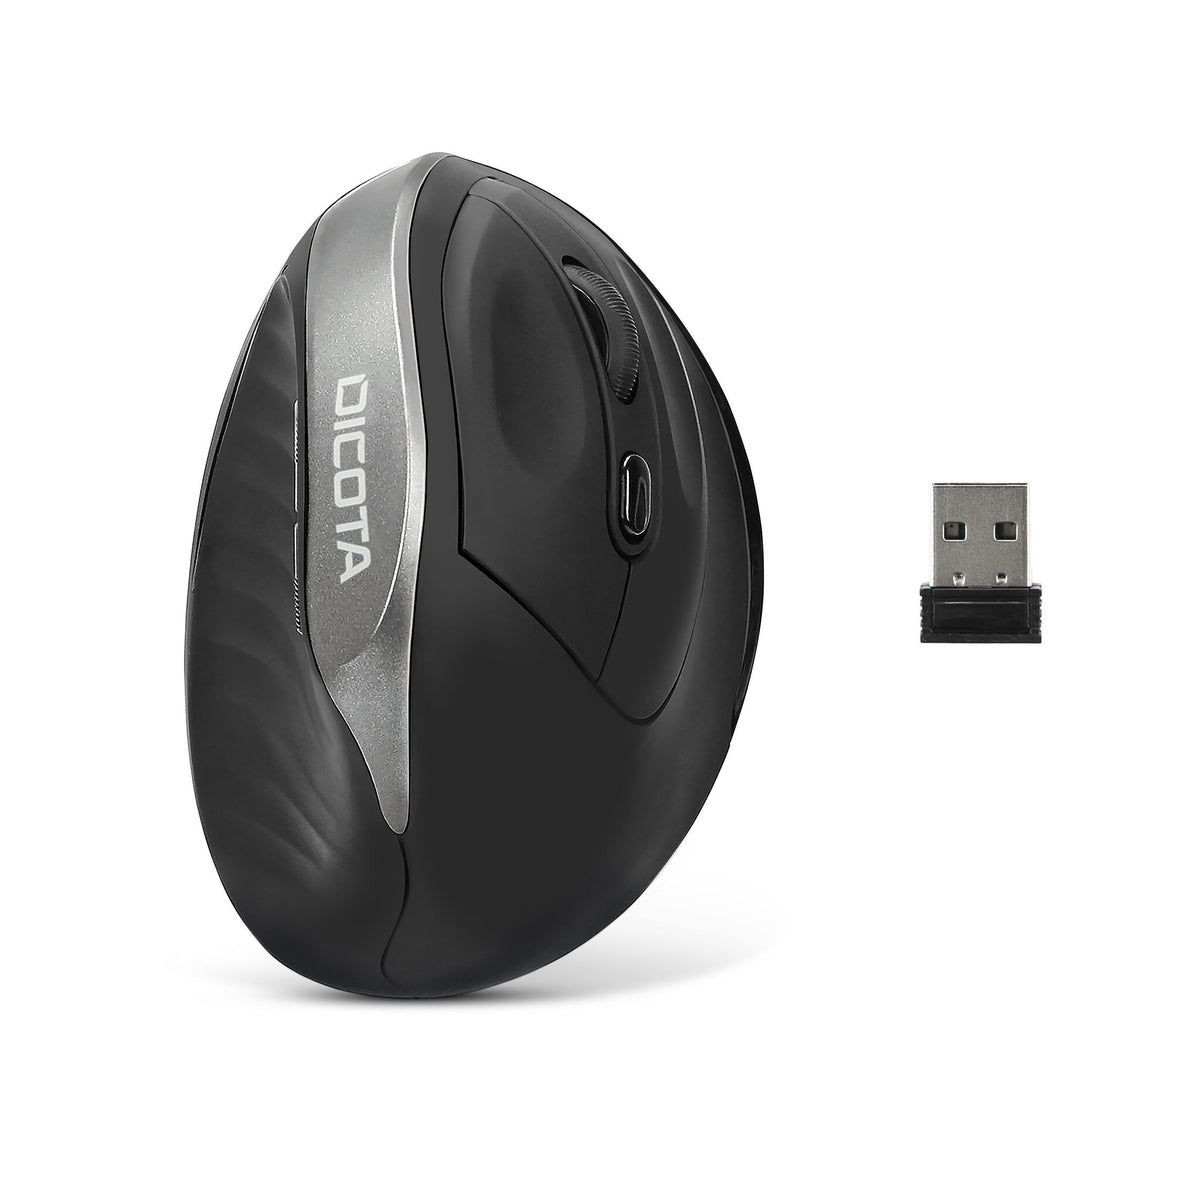 DICOTA D31981 Bluetooth mouse - 1,600 DPI